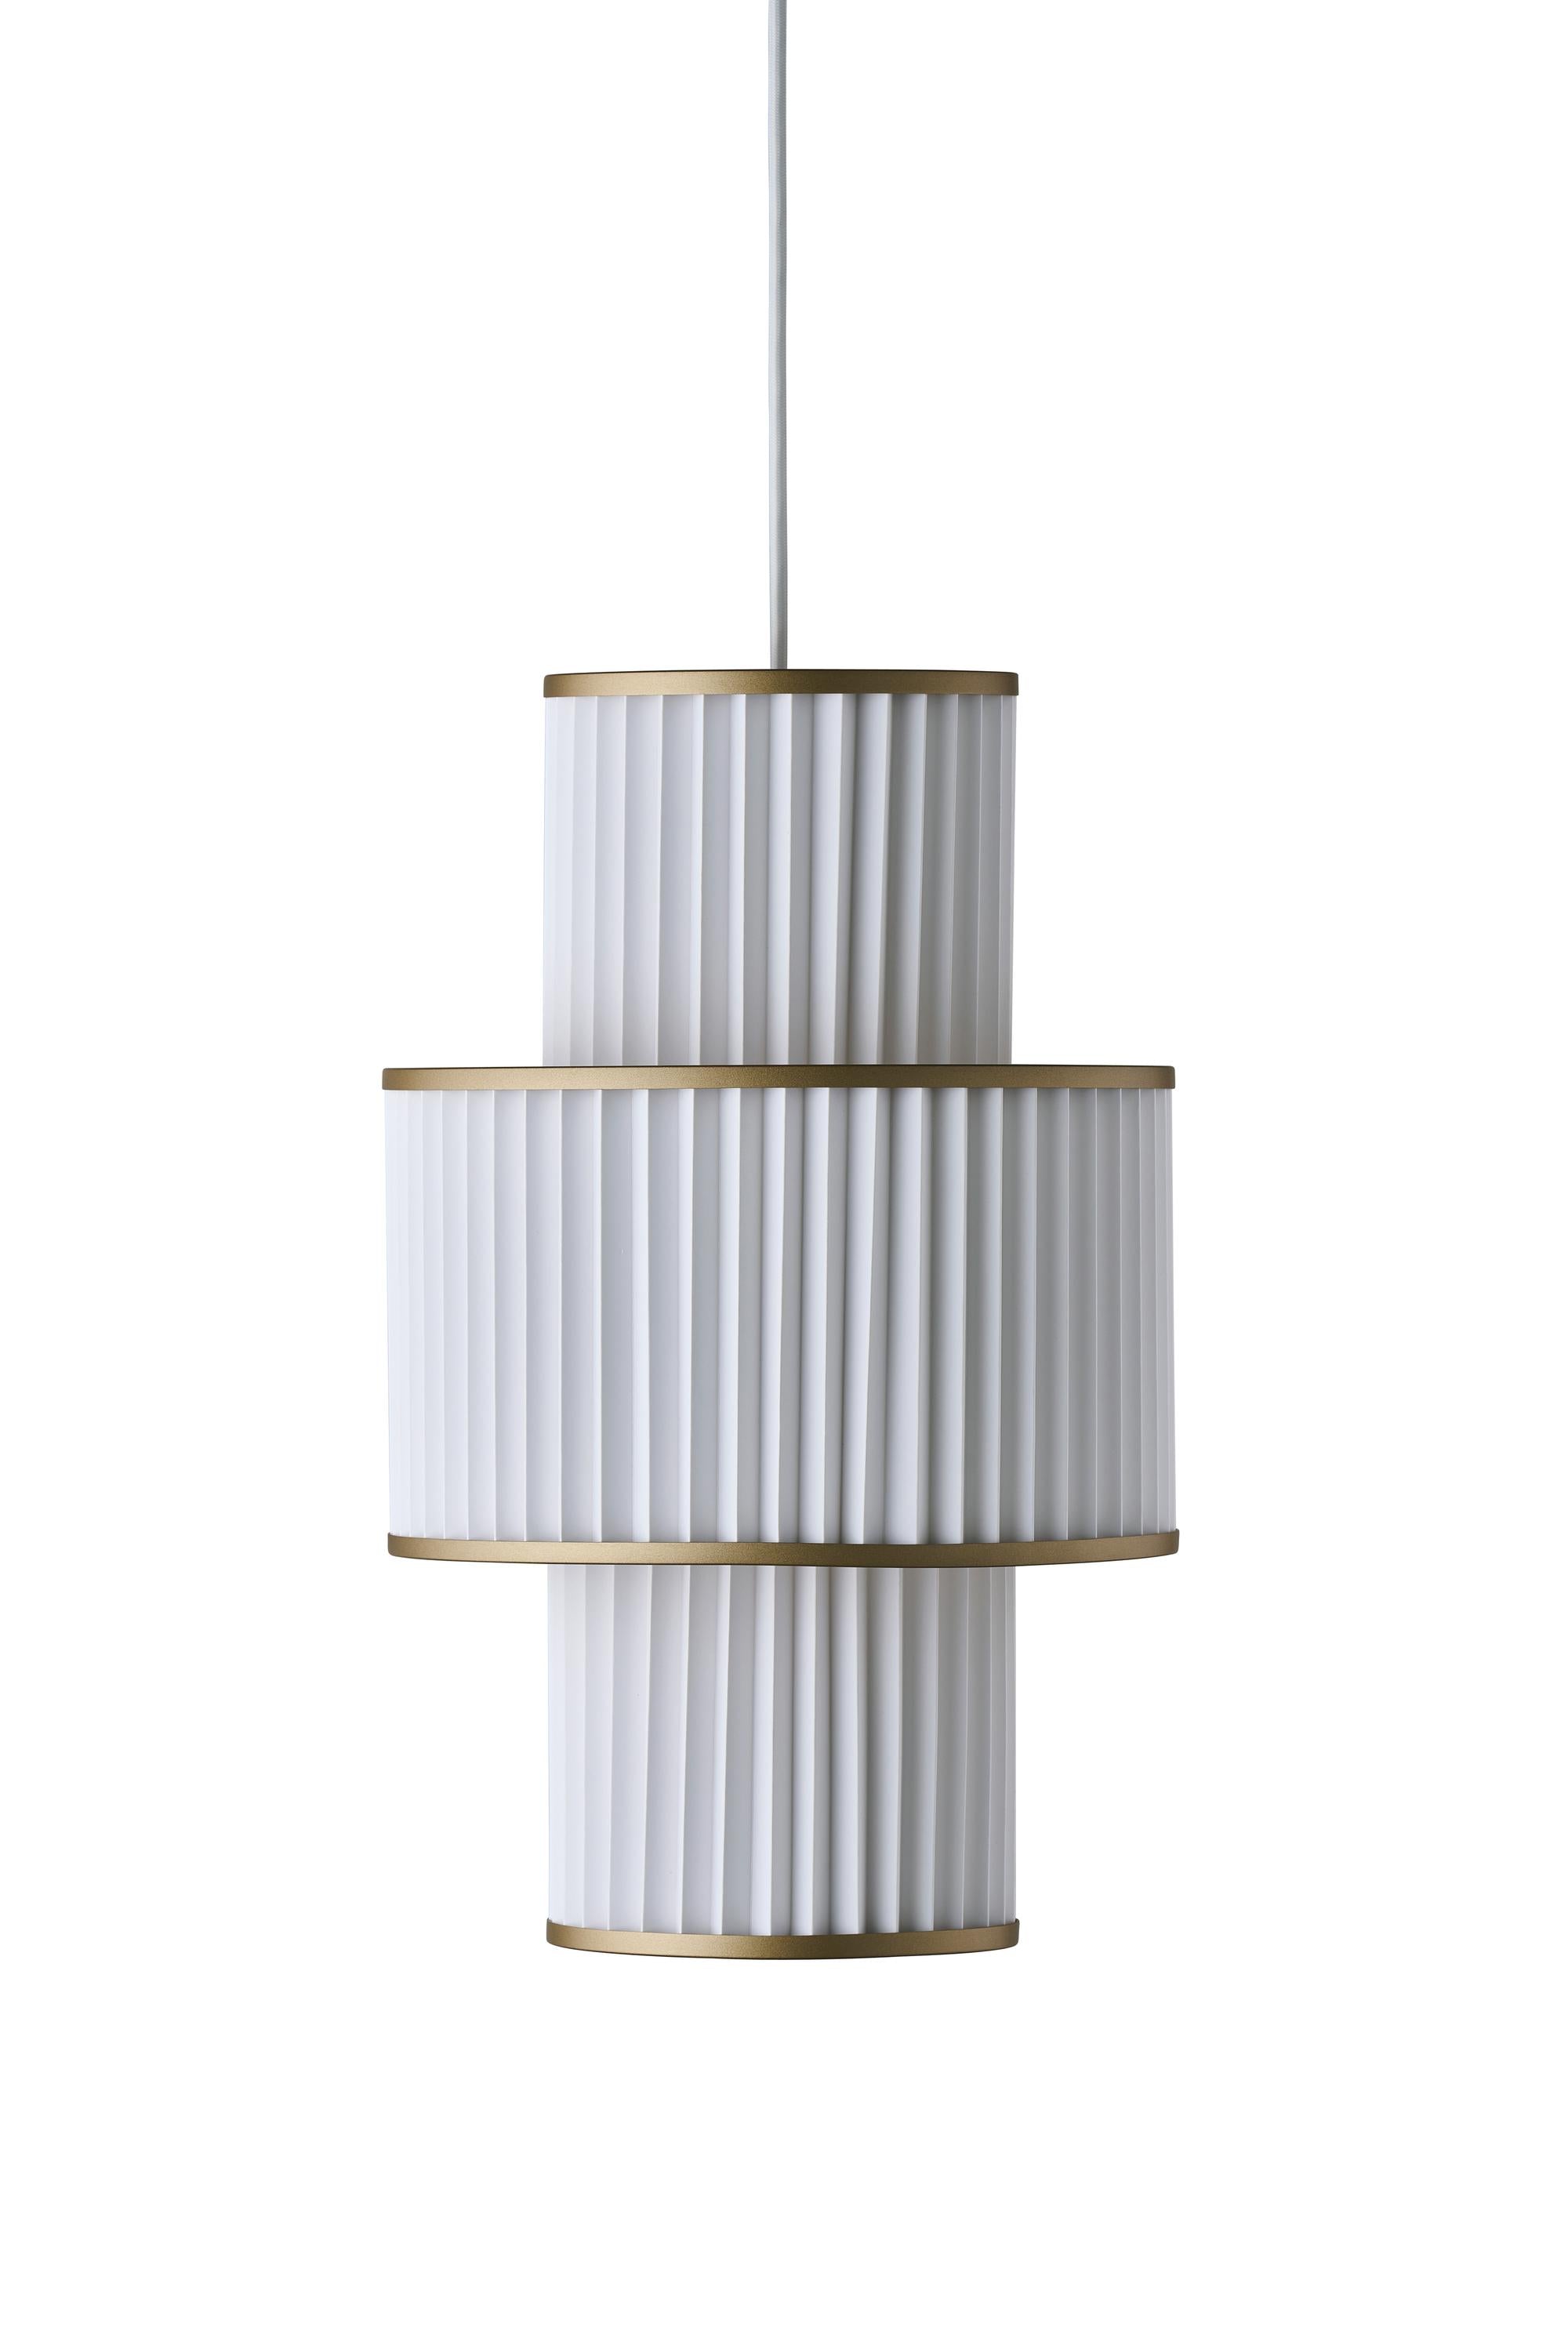 Le Klint Plivello Suspensionlampe Golden/White med 3 nyanser (S M S)